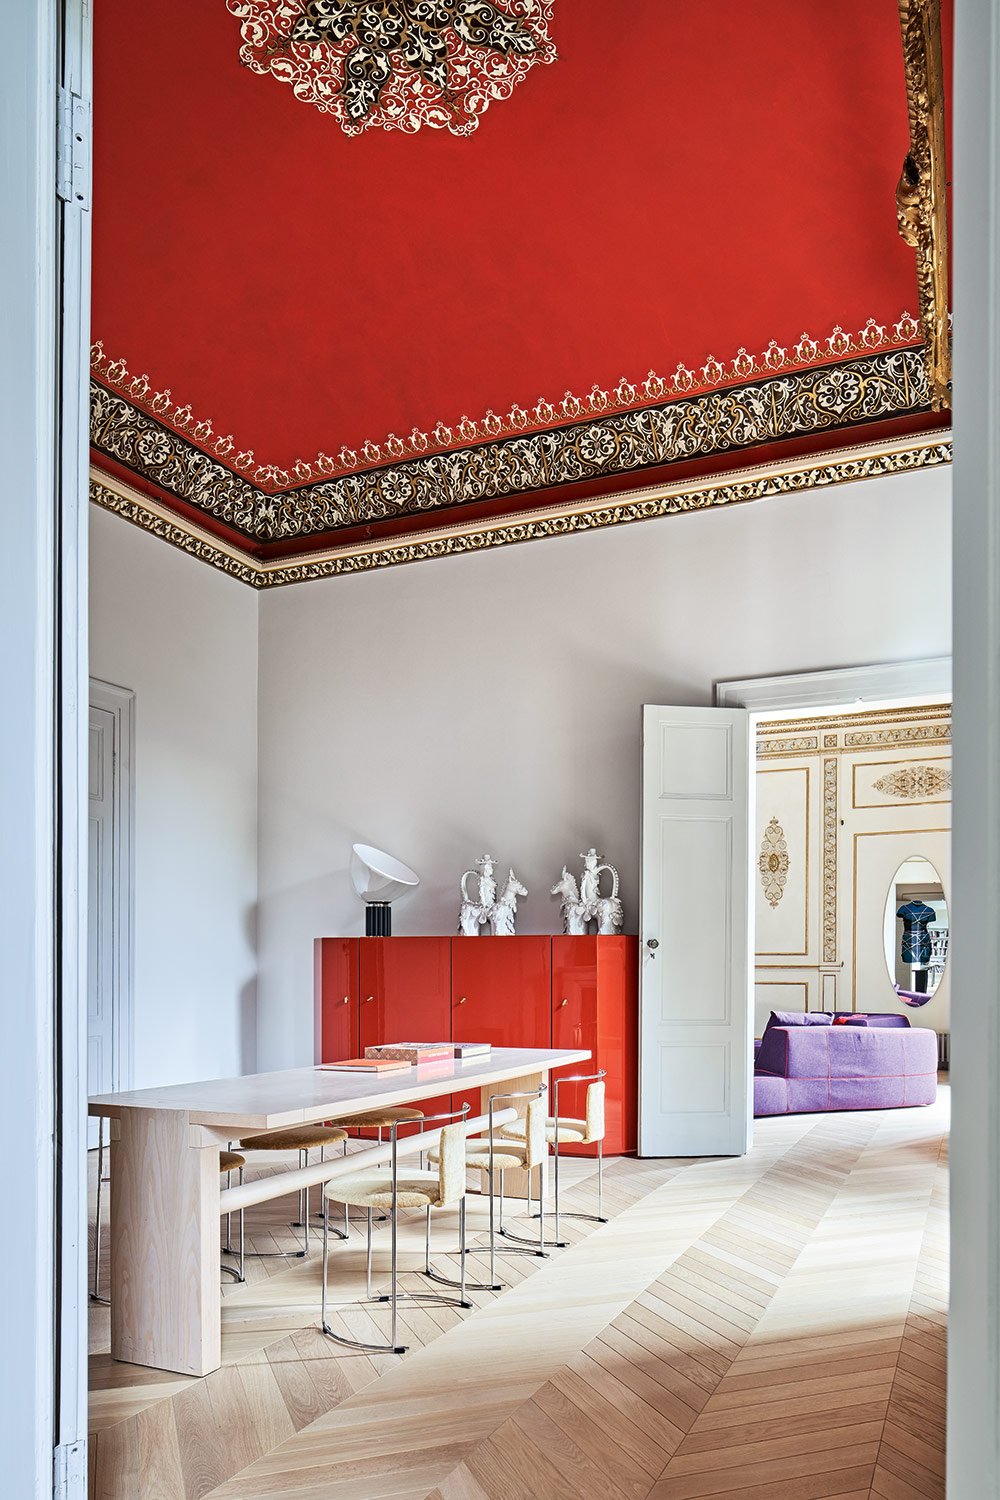 Die Einrichtung von Cassina harmoniert mit dem herrlichen Deckenfresko und verleiht dem Ambiente in Kombination 0vmit dem Holzboden und dem natür-lichen Licht ein Gefühl von Wärme.